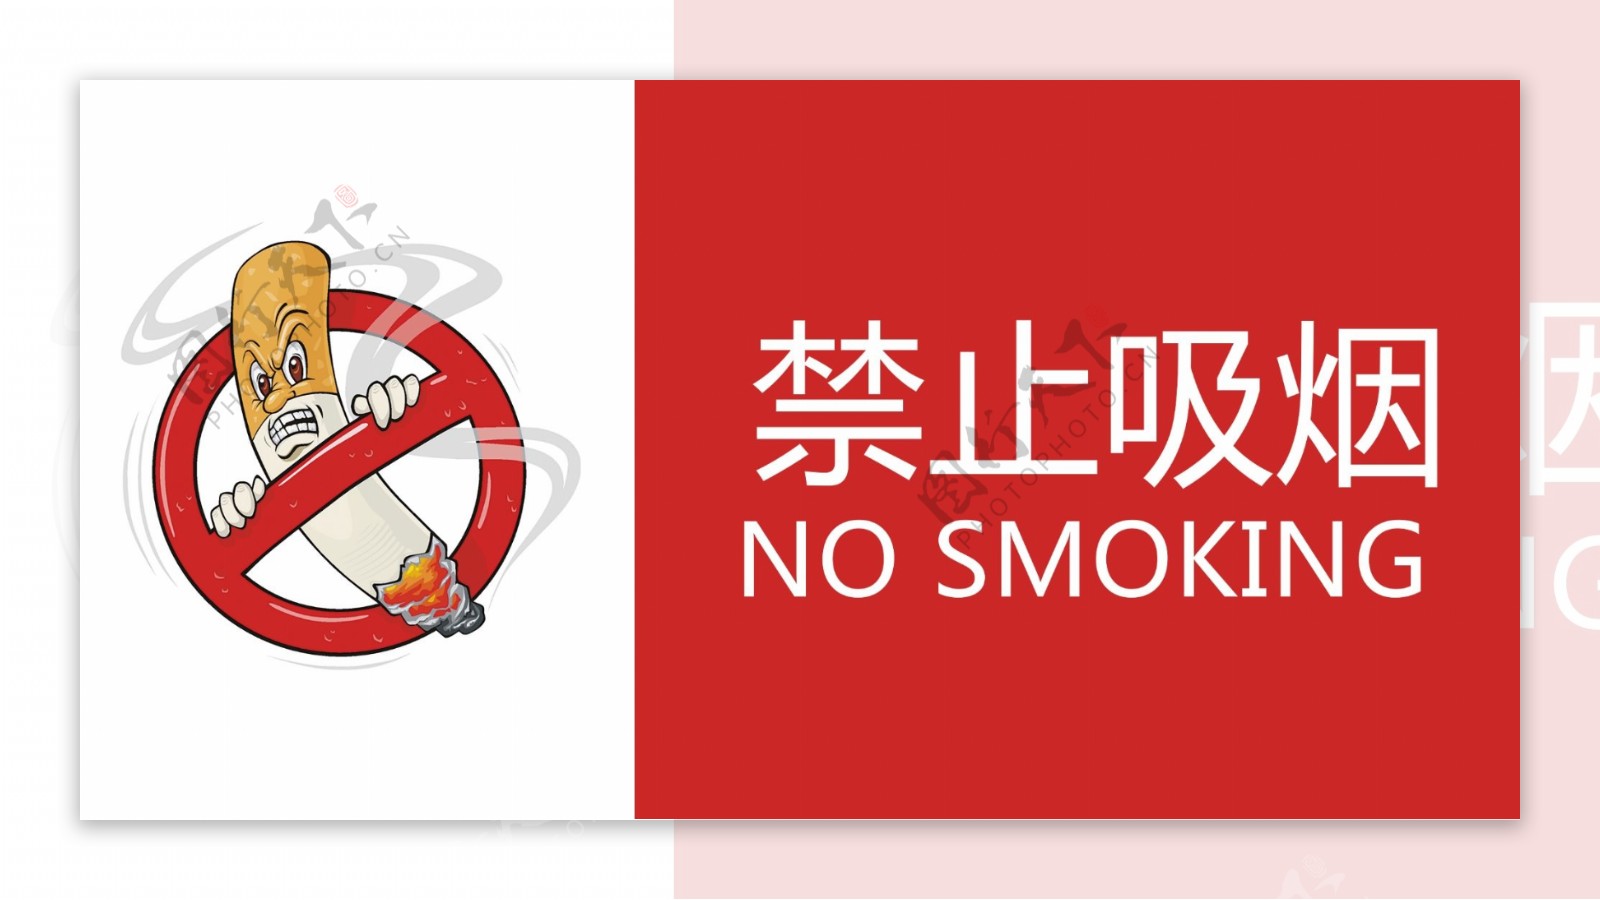 禁止吸烟1